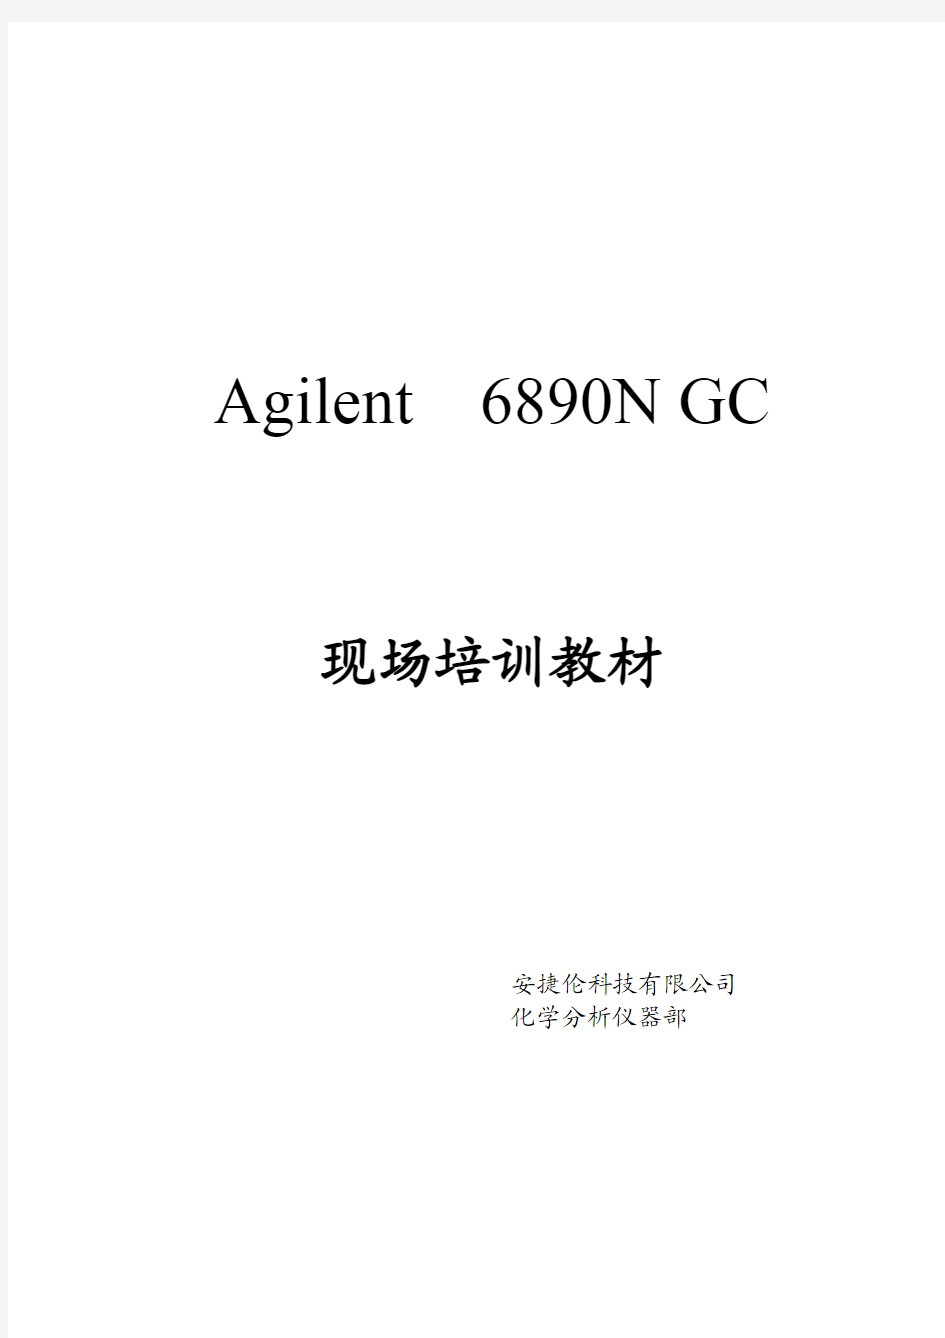 安捷伦6890n gc现场培训资料(中文)